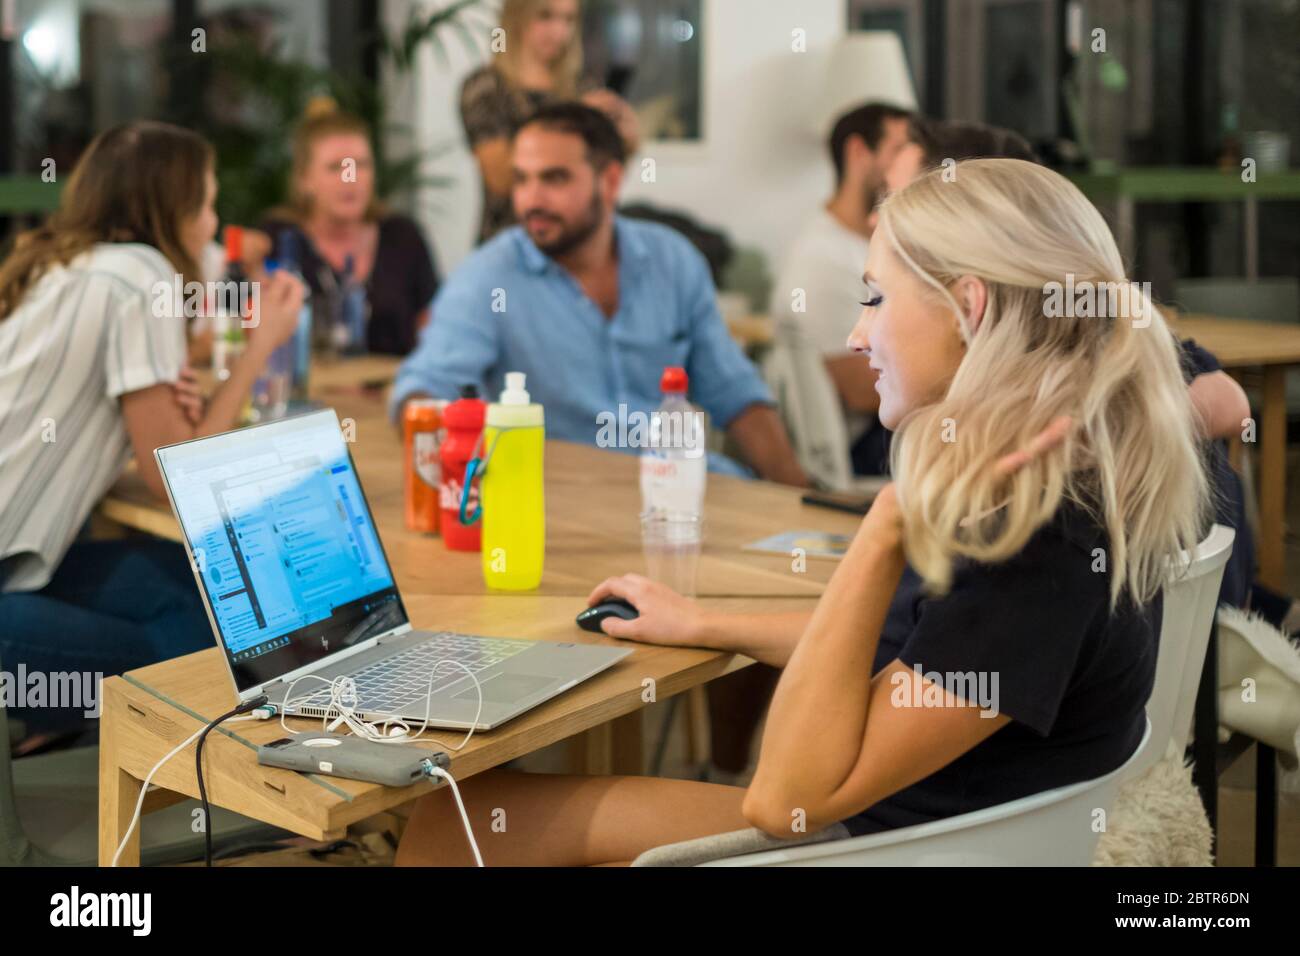 Eine Frau arbeitet an einem Laptop, während ihre Kollegen sich im Hintergrund treffen und Kontakte knüpfen. Stockfoto